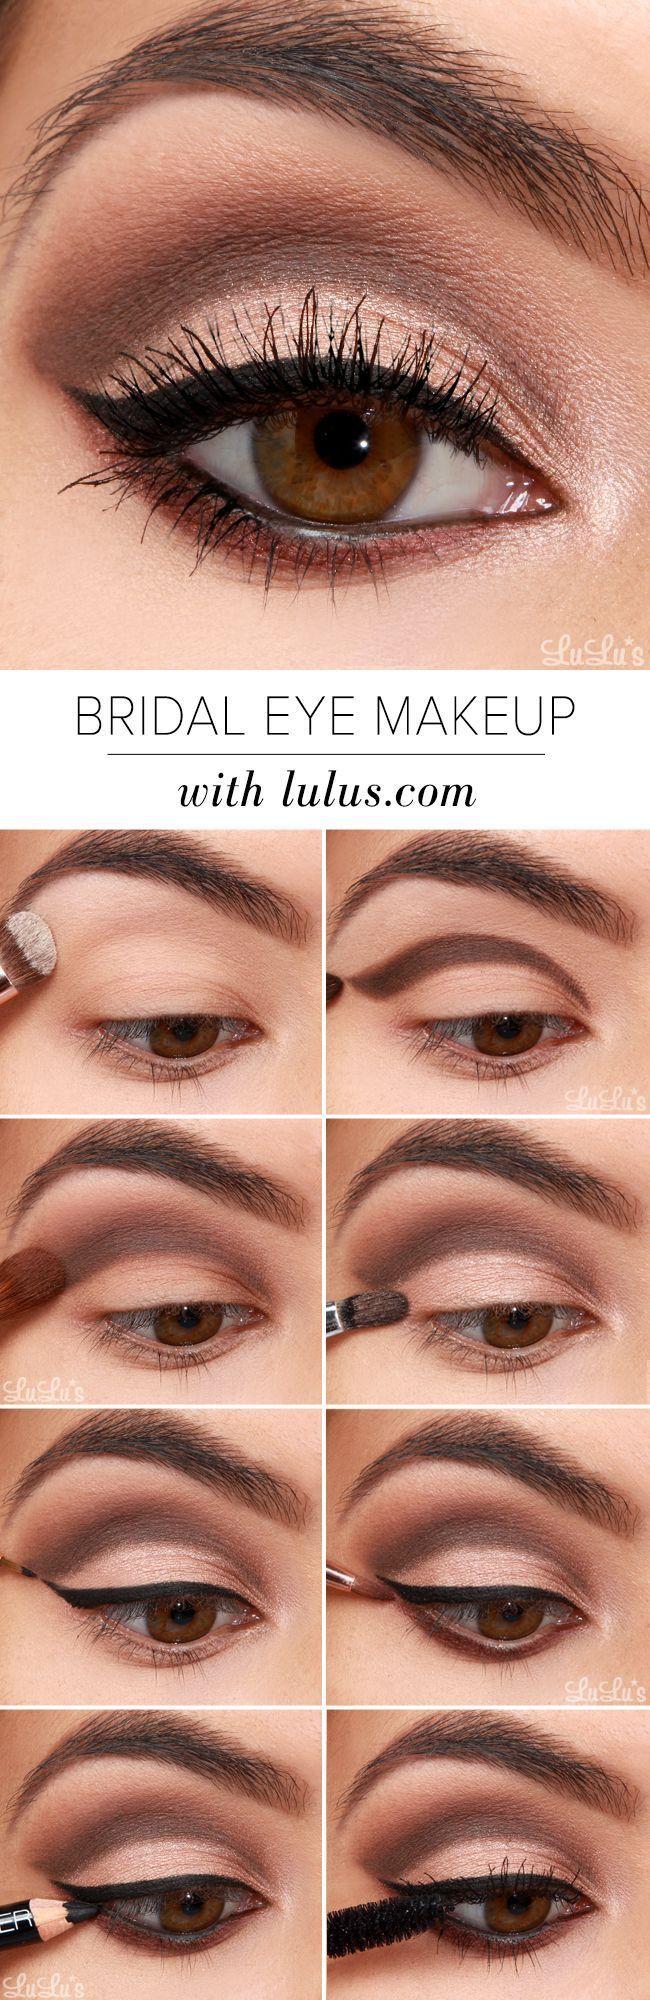 Wedding - Bridal Eye Makeup